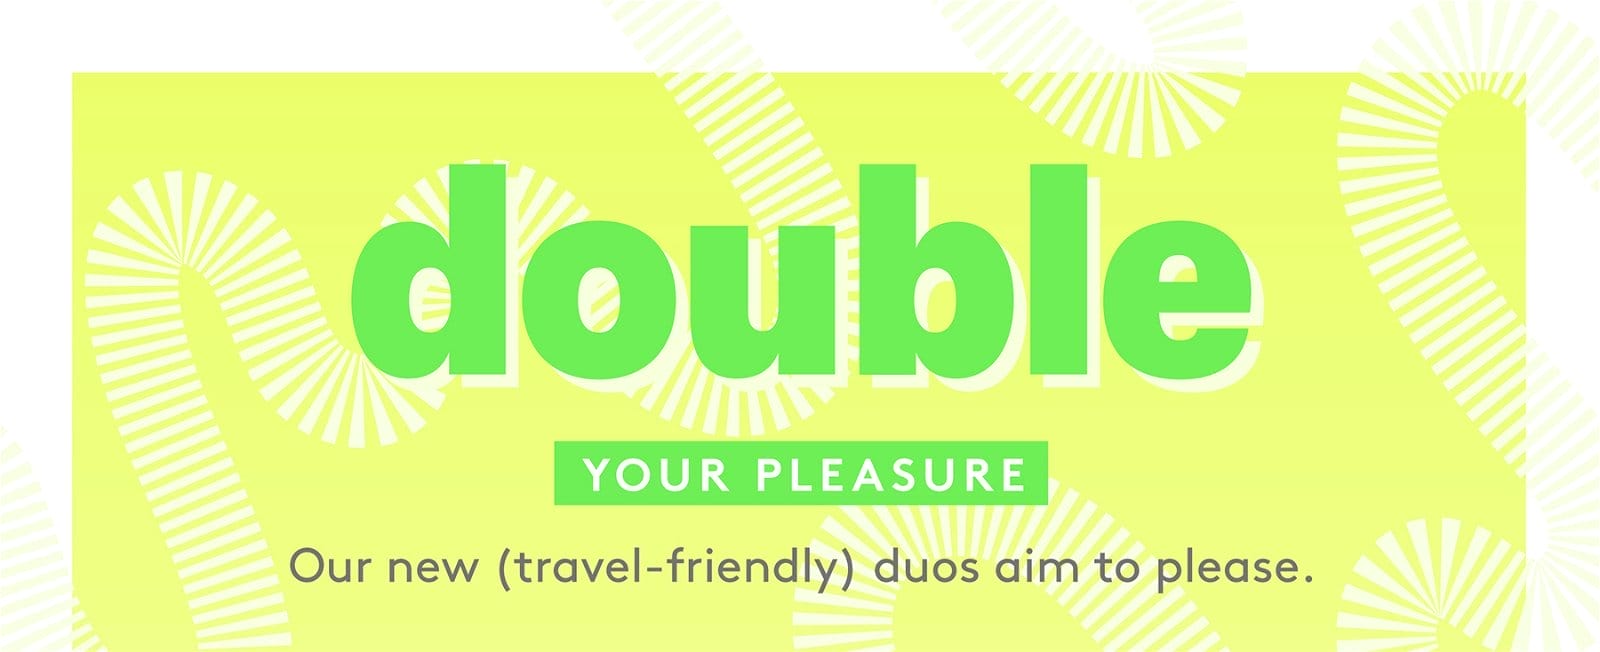 Double your pleasure